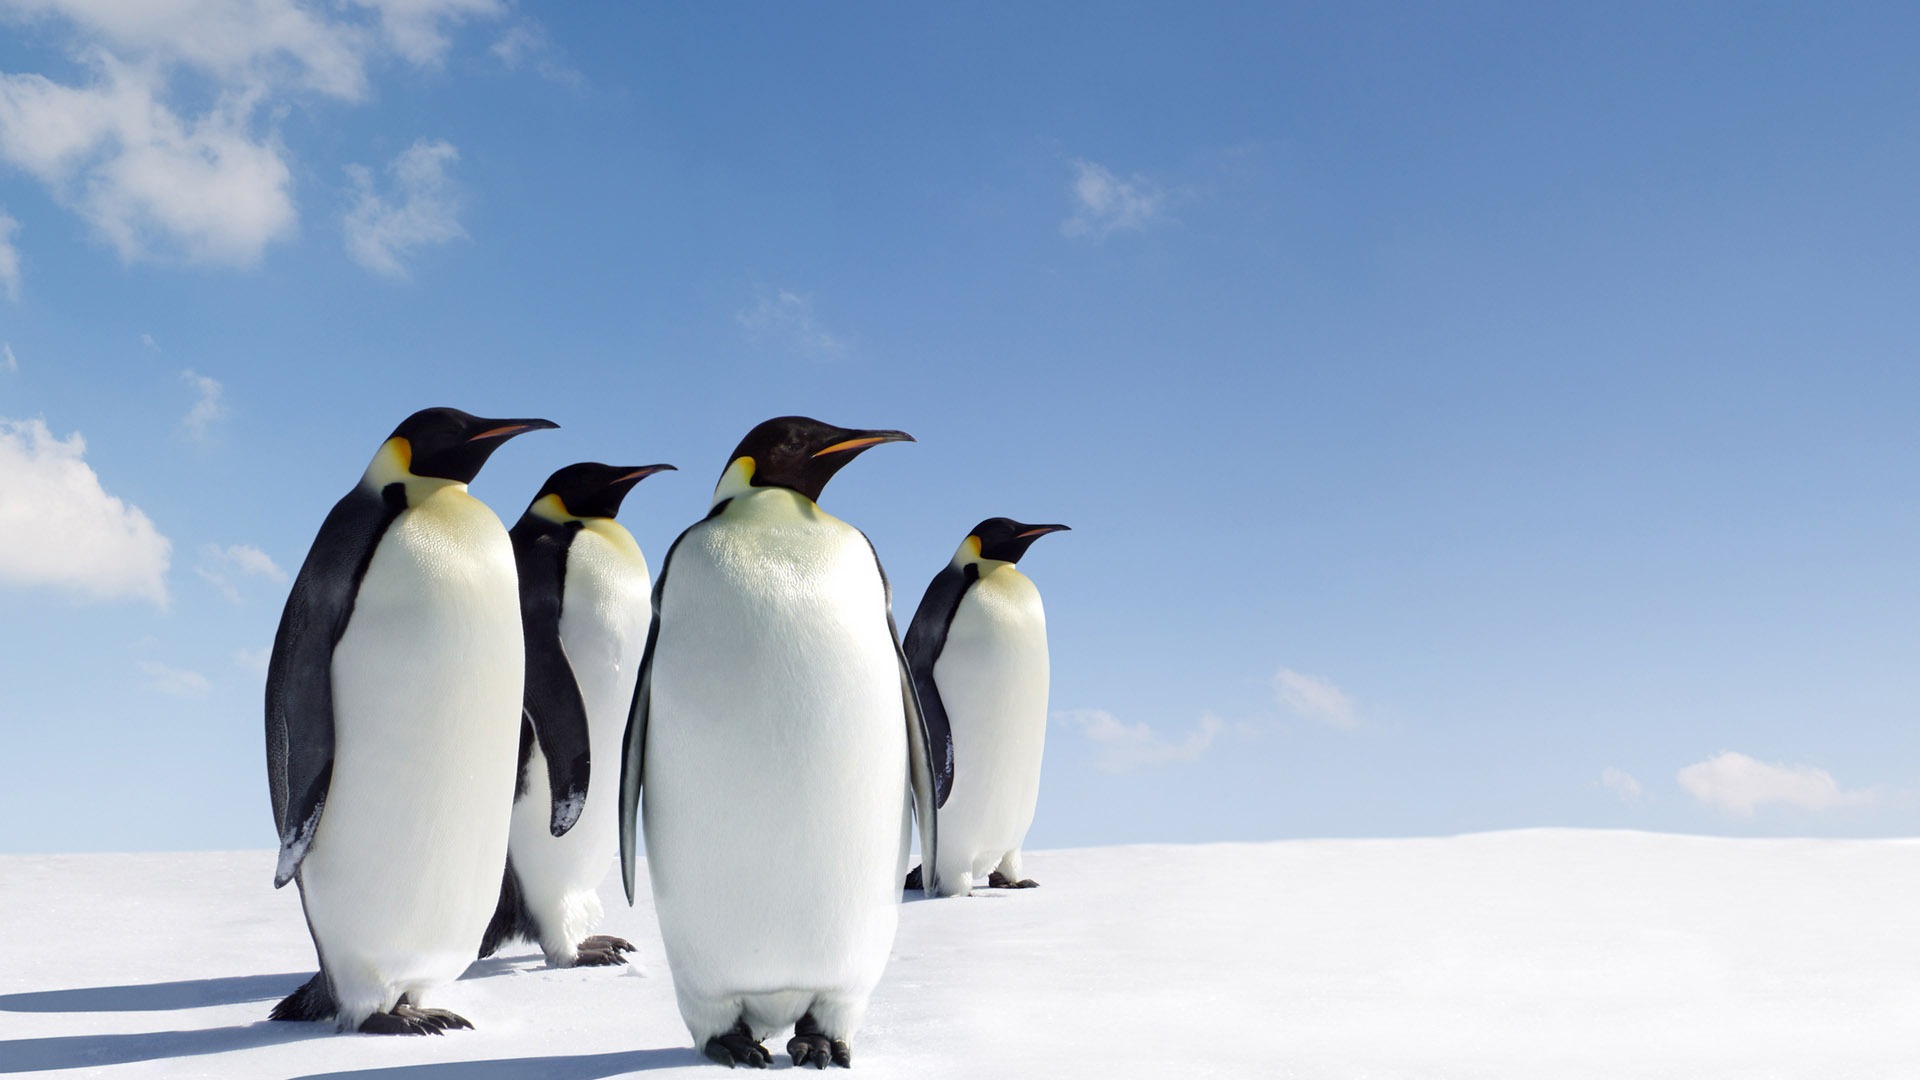 pinguino sfondo del desktop,pinguino,uccello incapace di volare,uccello,pinguino imperatore,pinguino reale